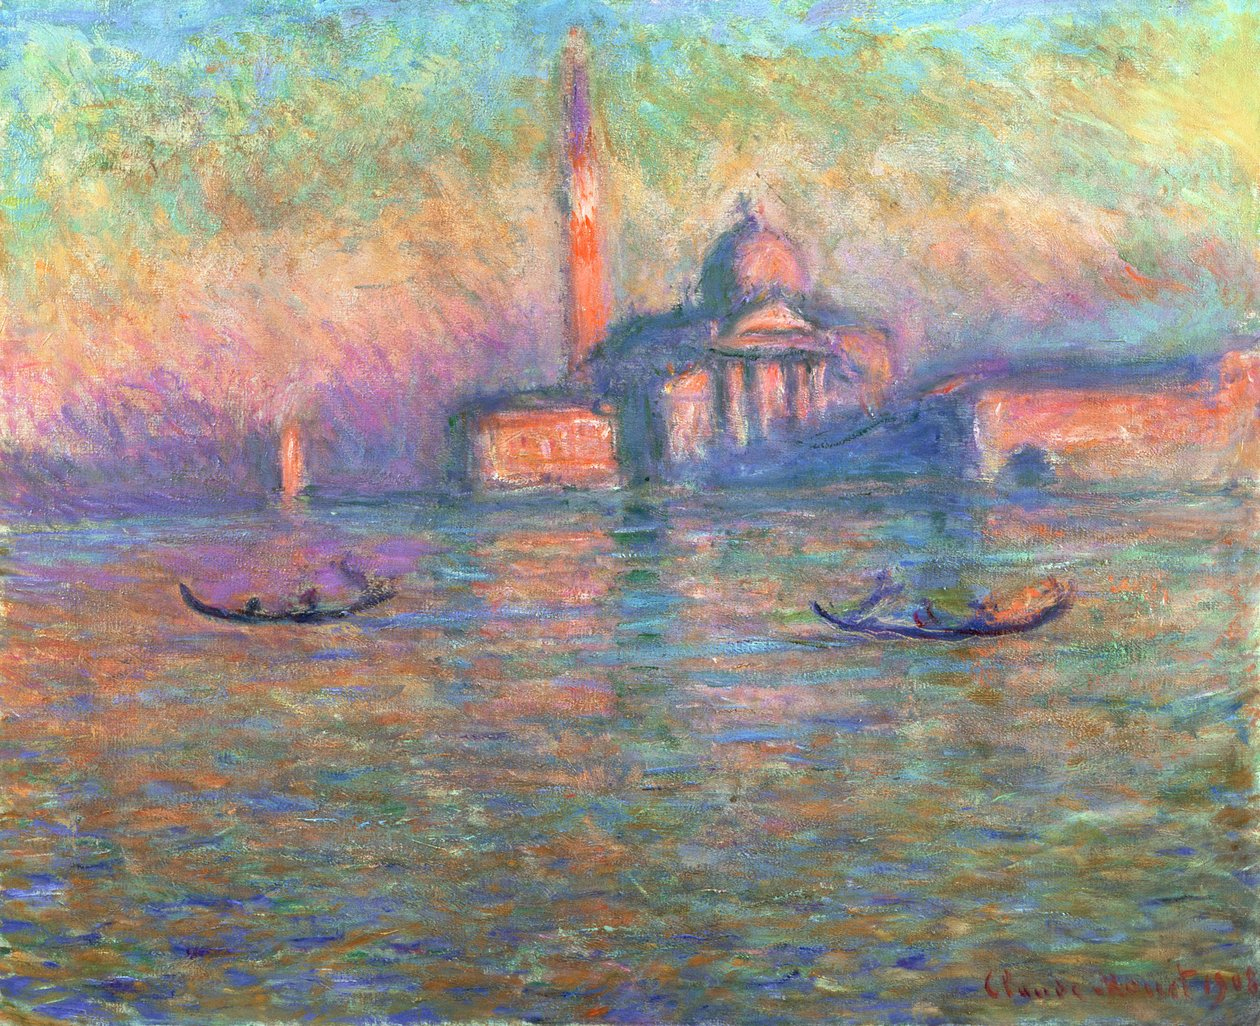 클로드 모네(Claude Monet), 프랑스, 화가, 1840-1926